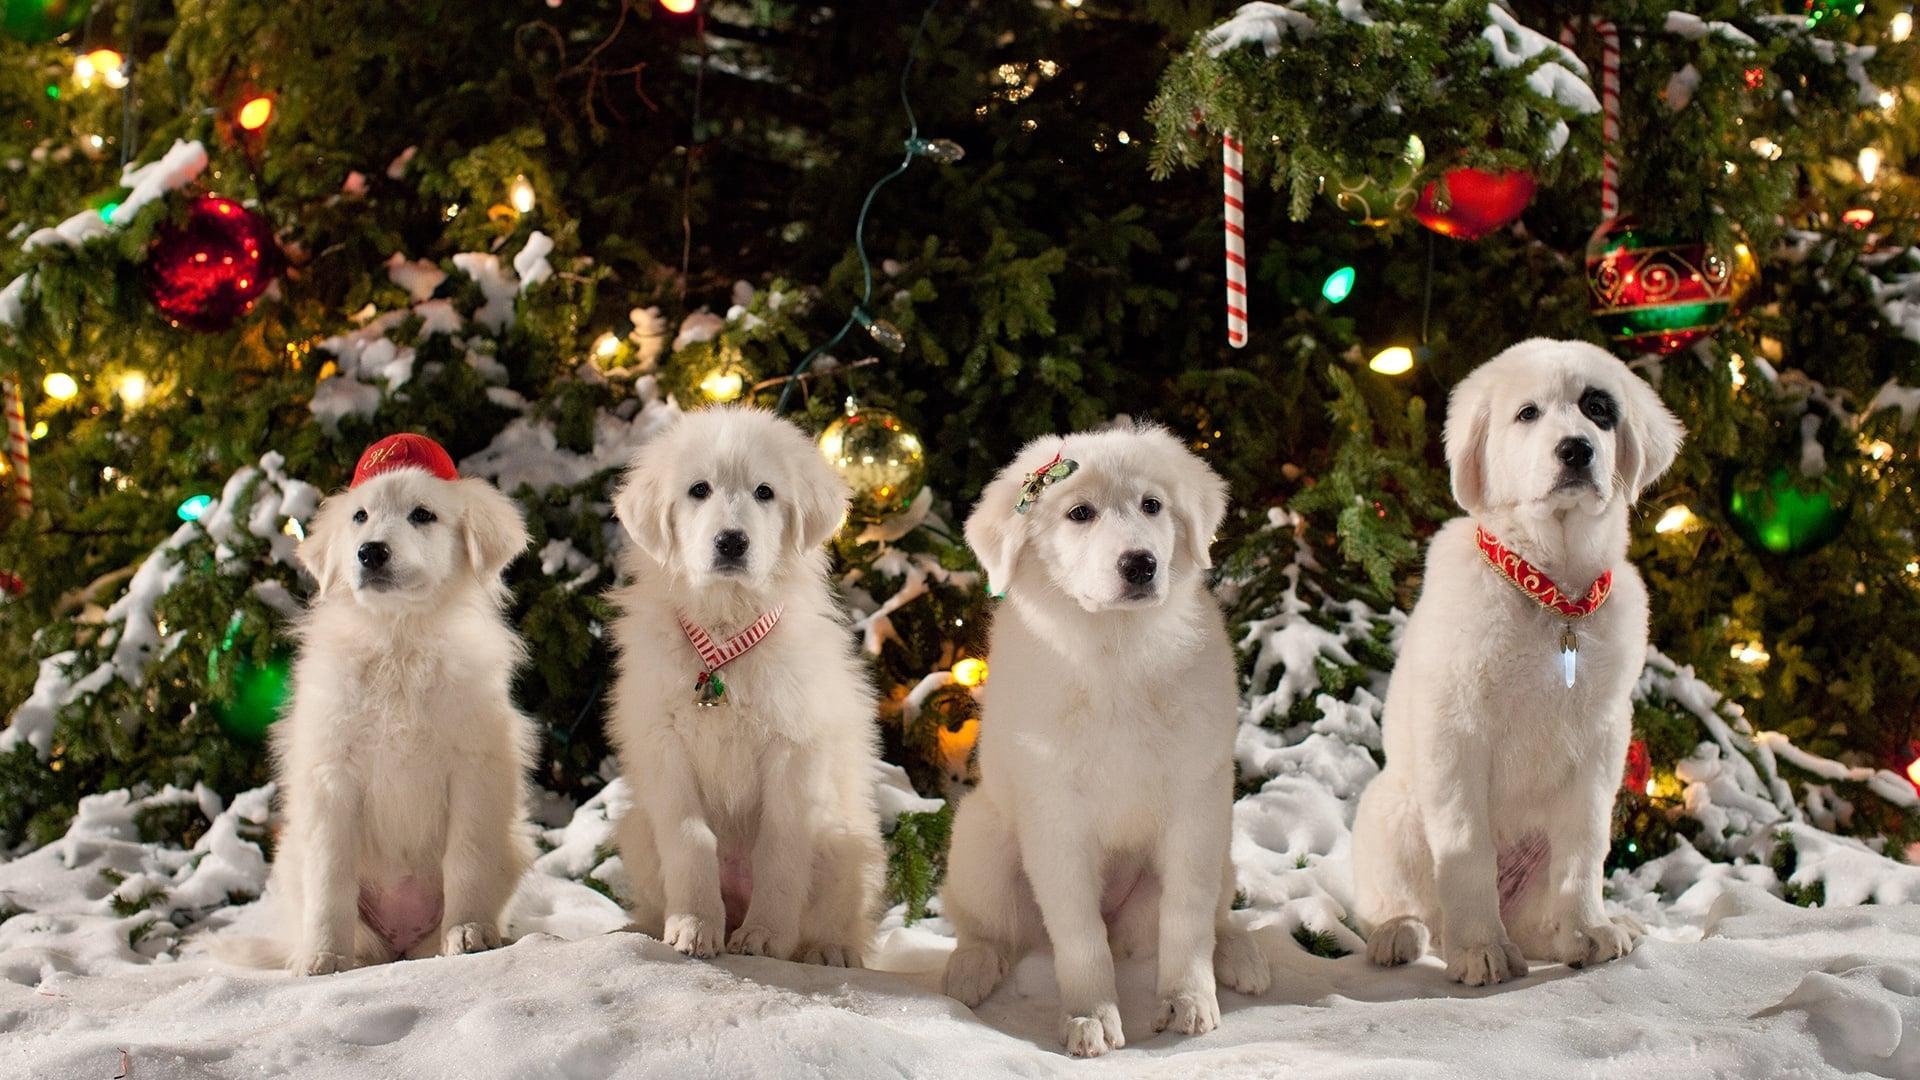 Santa Paws 2: The Santa Pups backdrop